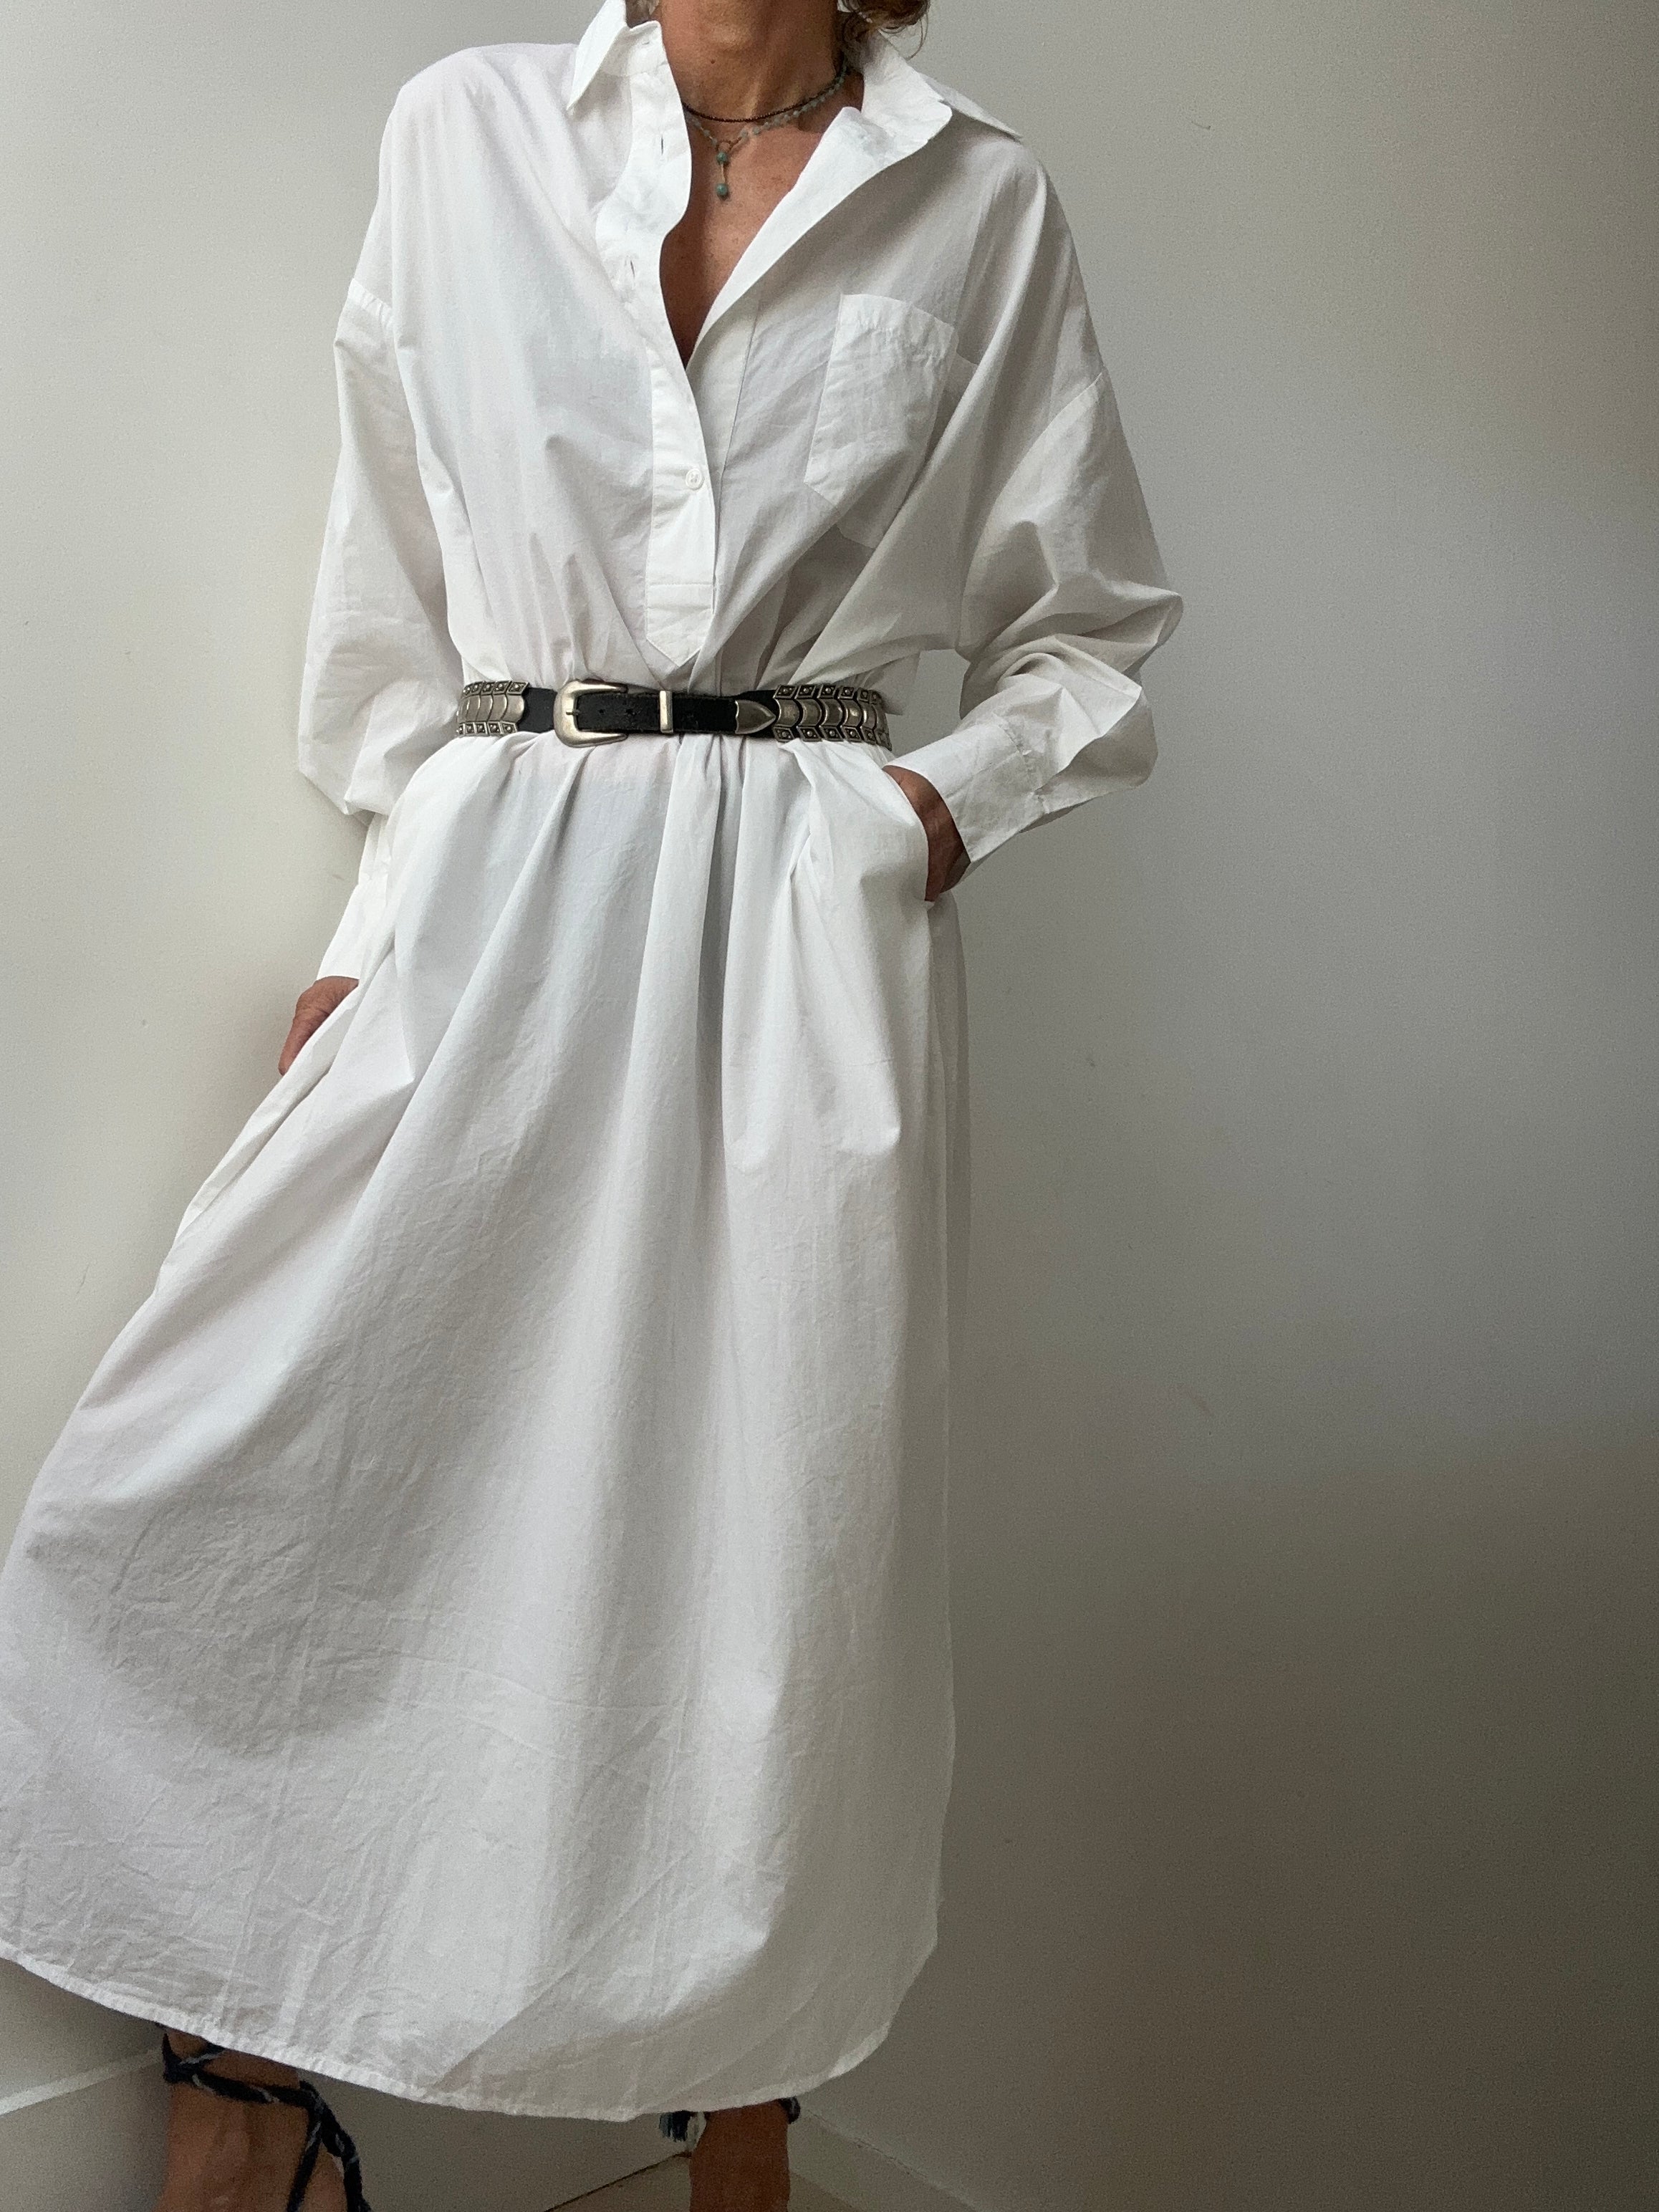 Skall Studio Dresses Skall Studio Edgar Shirtdress White